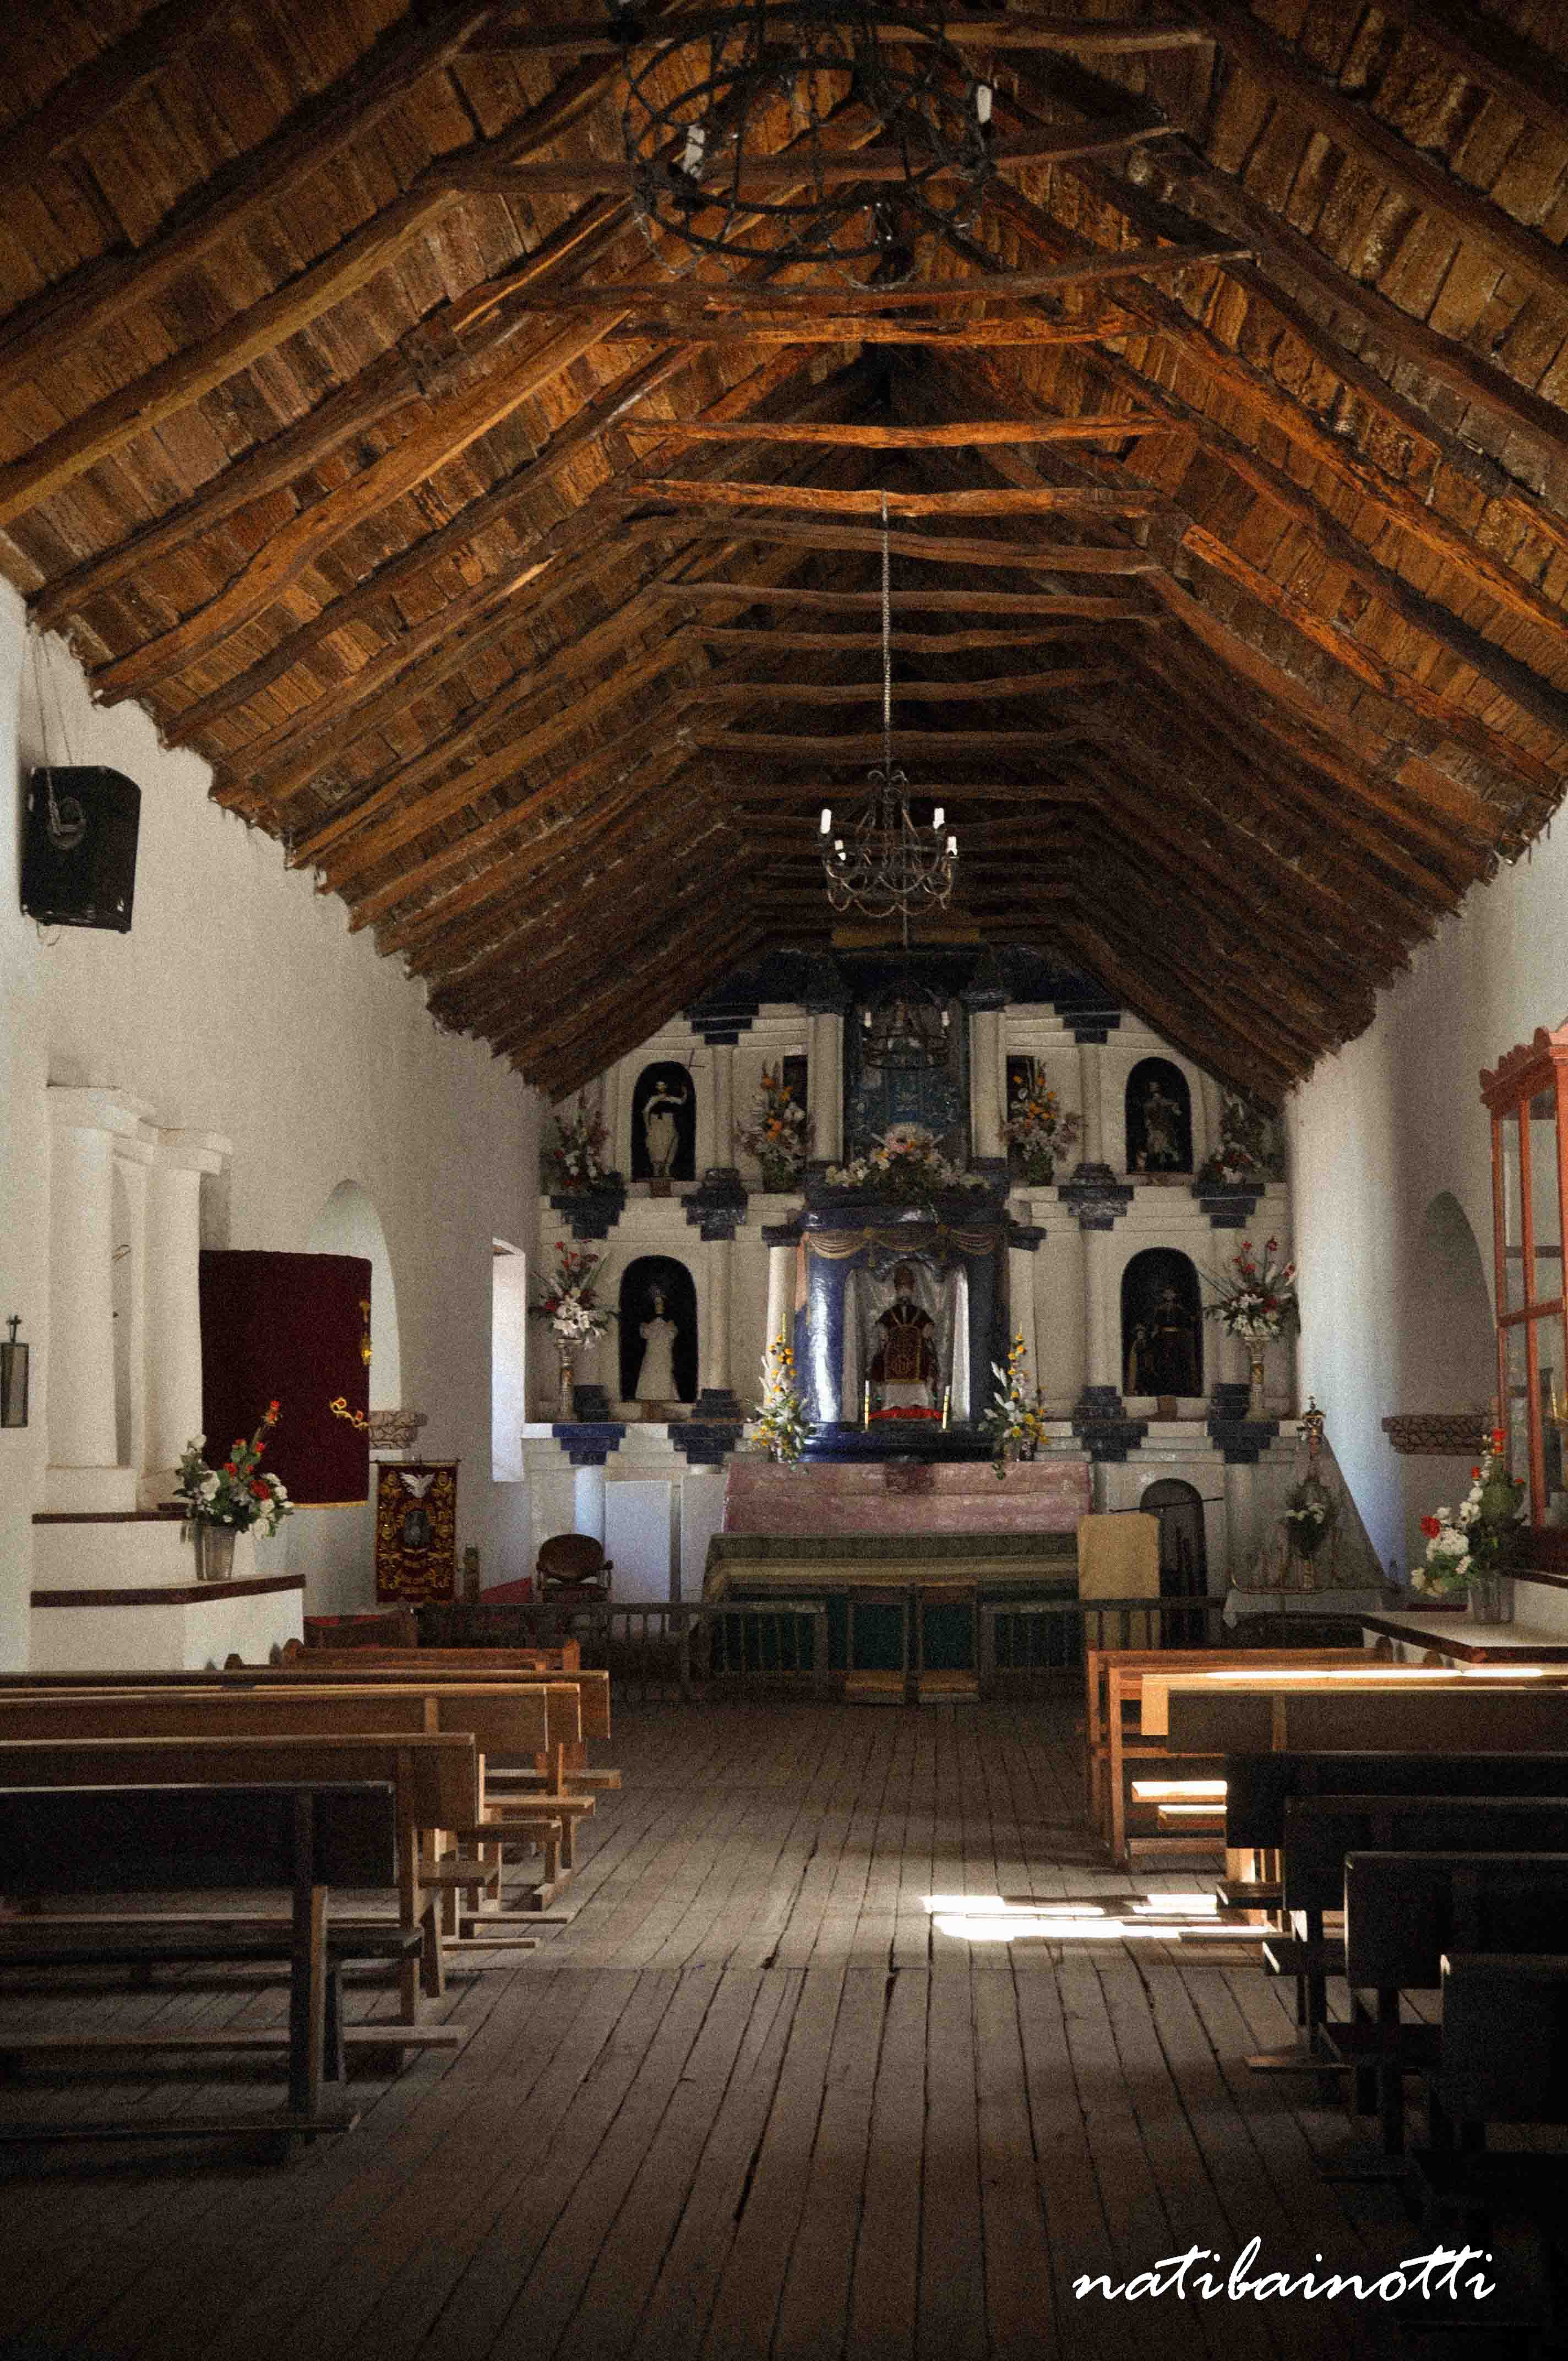 La iglesia por dentro, con su techo de cactus.